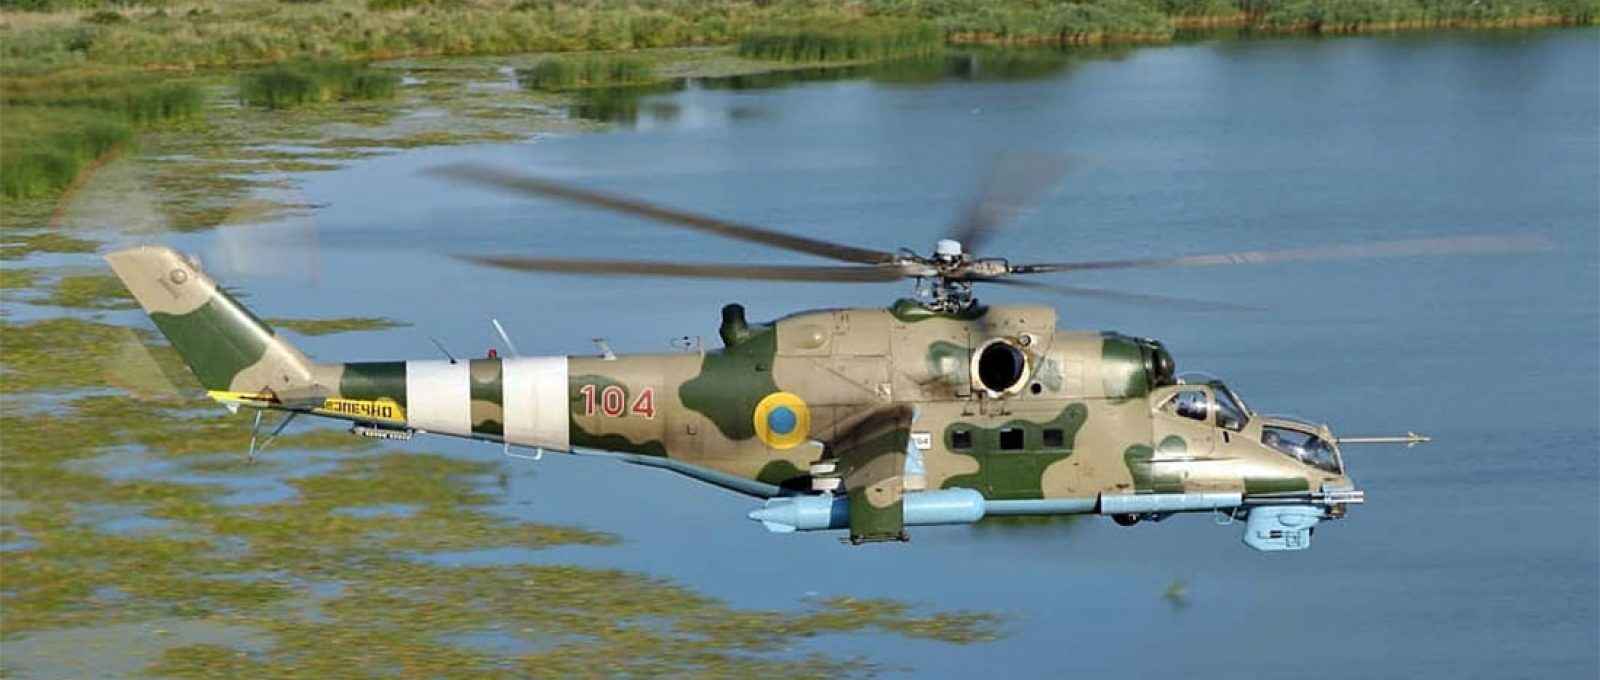 Helicóptero Mi-24 da aviação do Exército ucraniano, do tipo que teria sido empregado no ataque às instalações russas em Belgorod (Tommy Pfeiffer/MilitaryAviationInUa/Twitter).